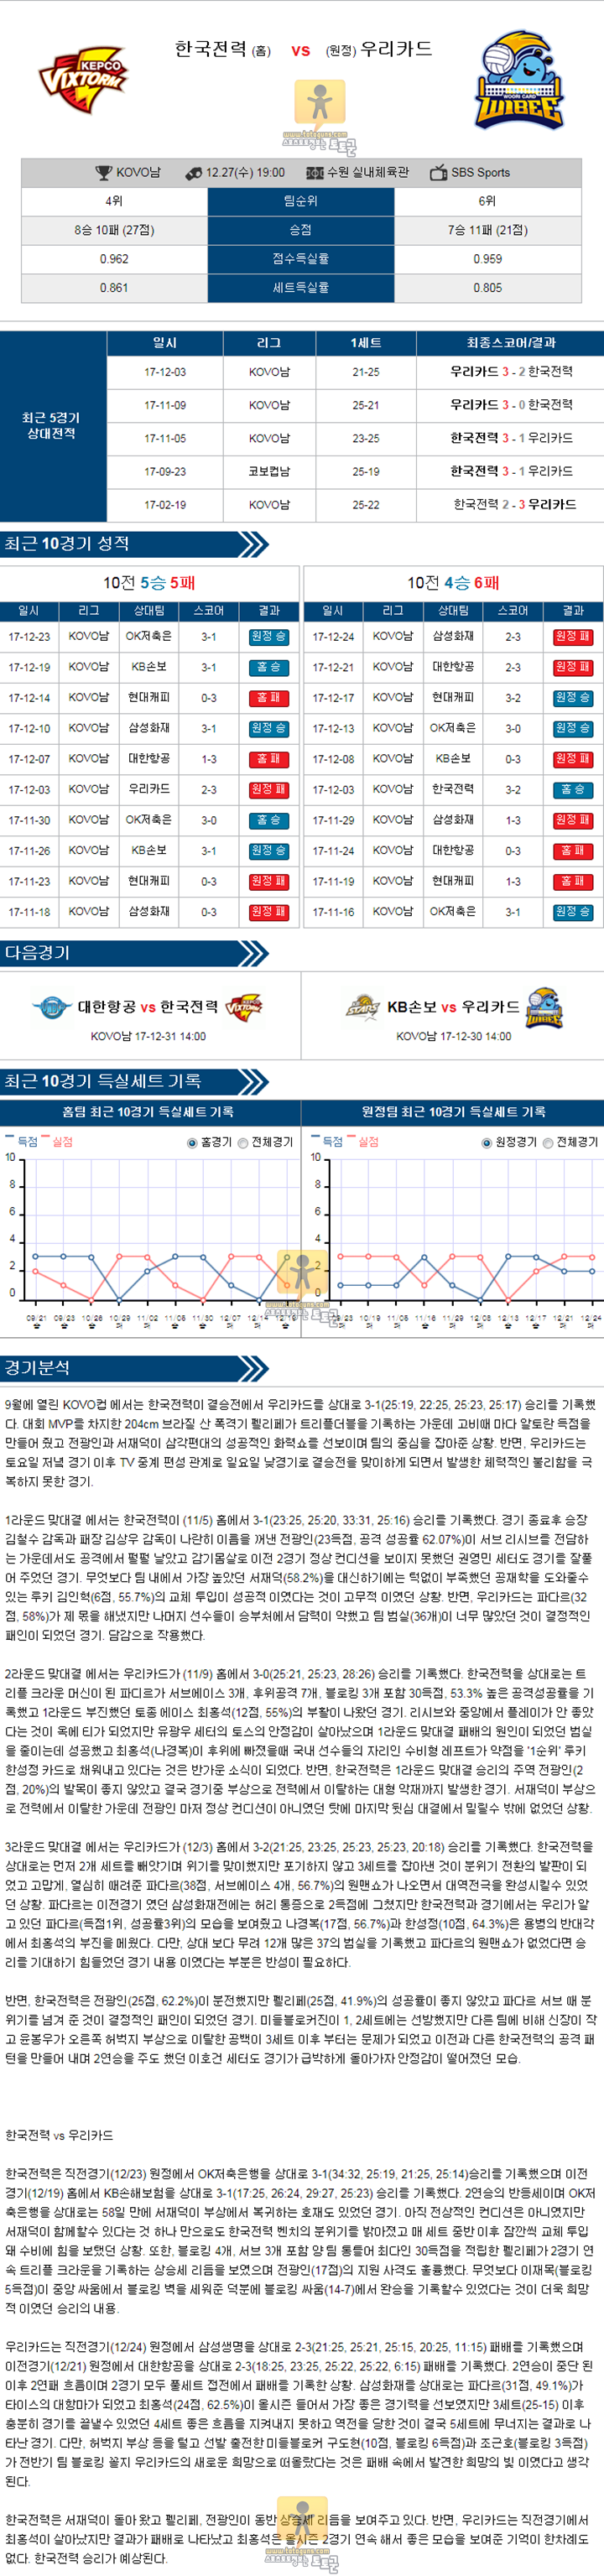 [KOVO] 12월 27일 19:00 남자프로배구분석 한국전력 vs 우리카드